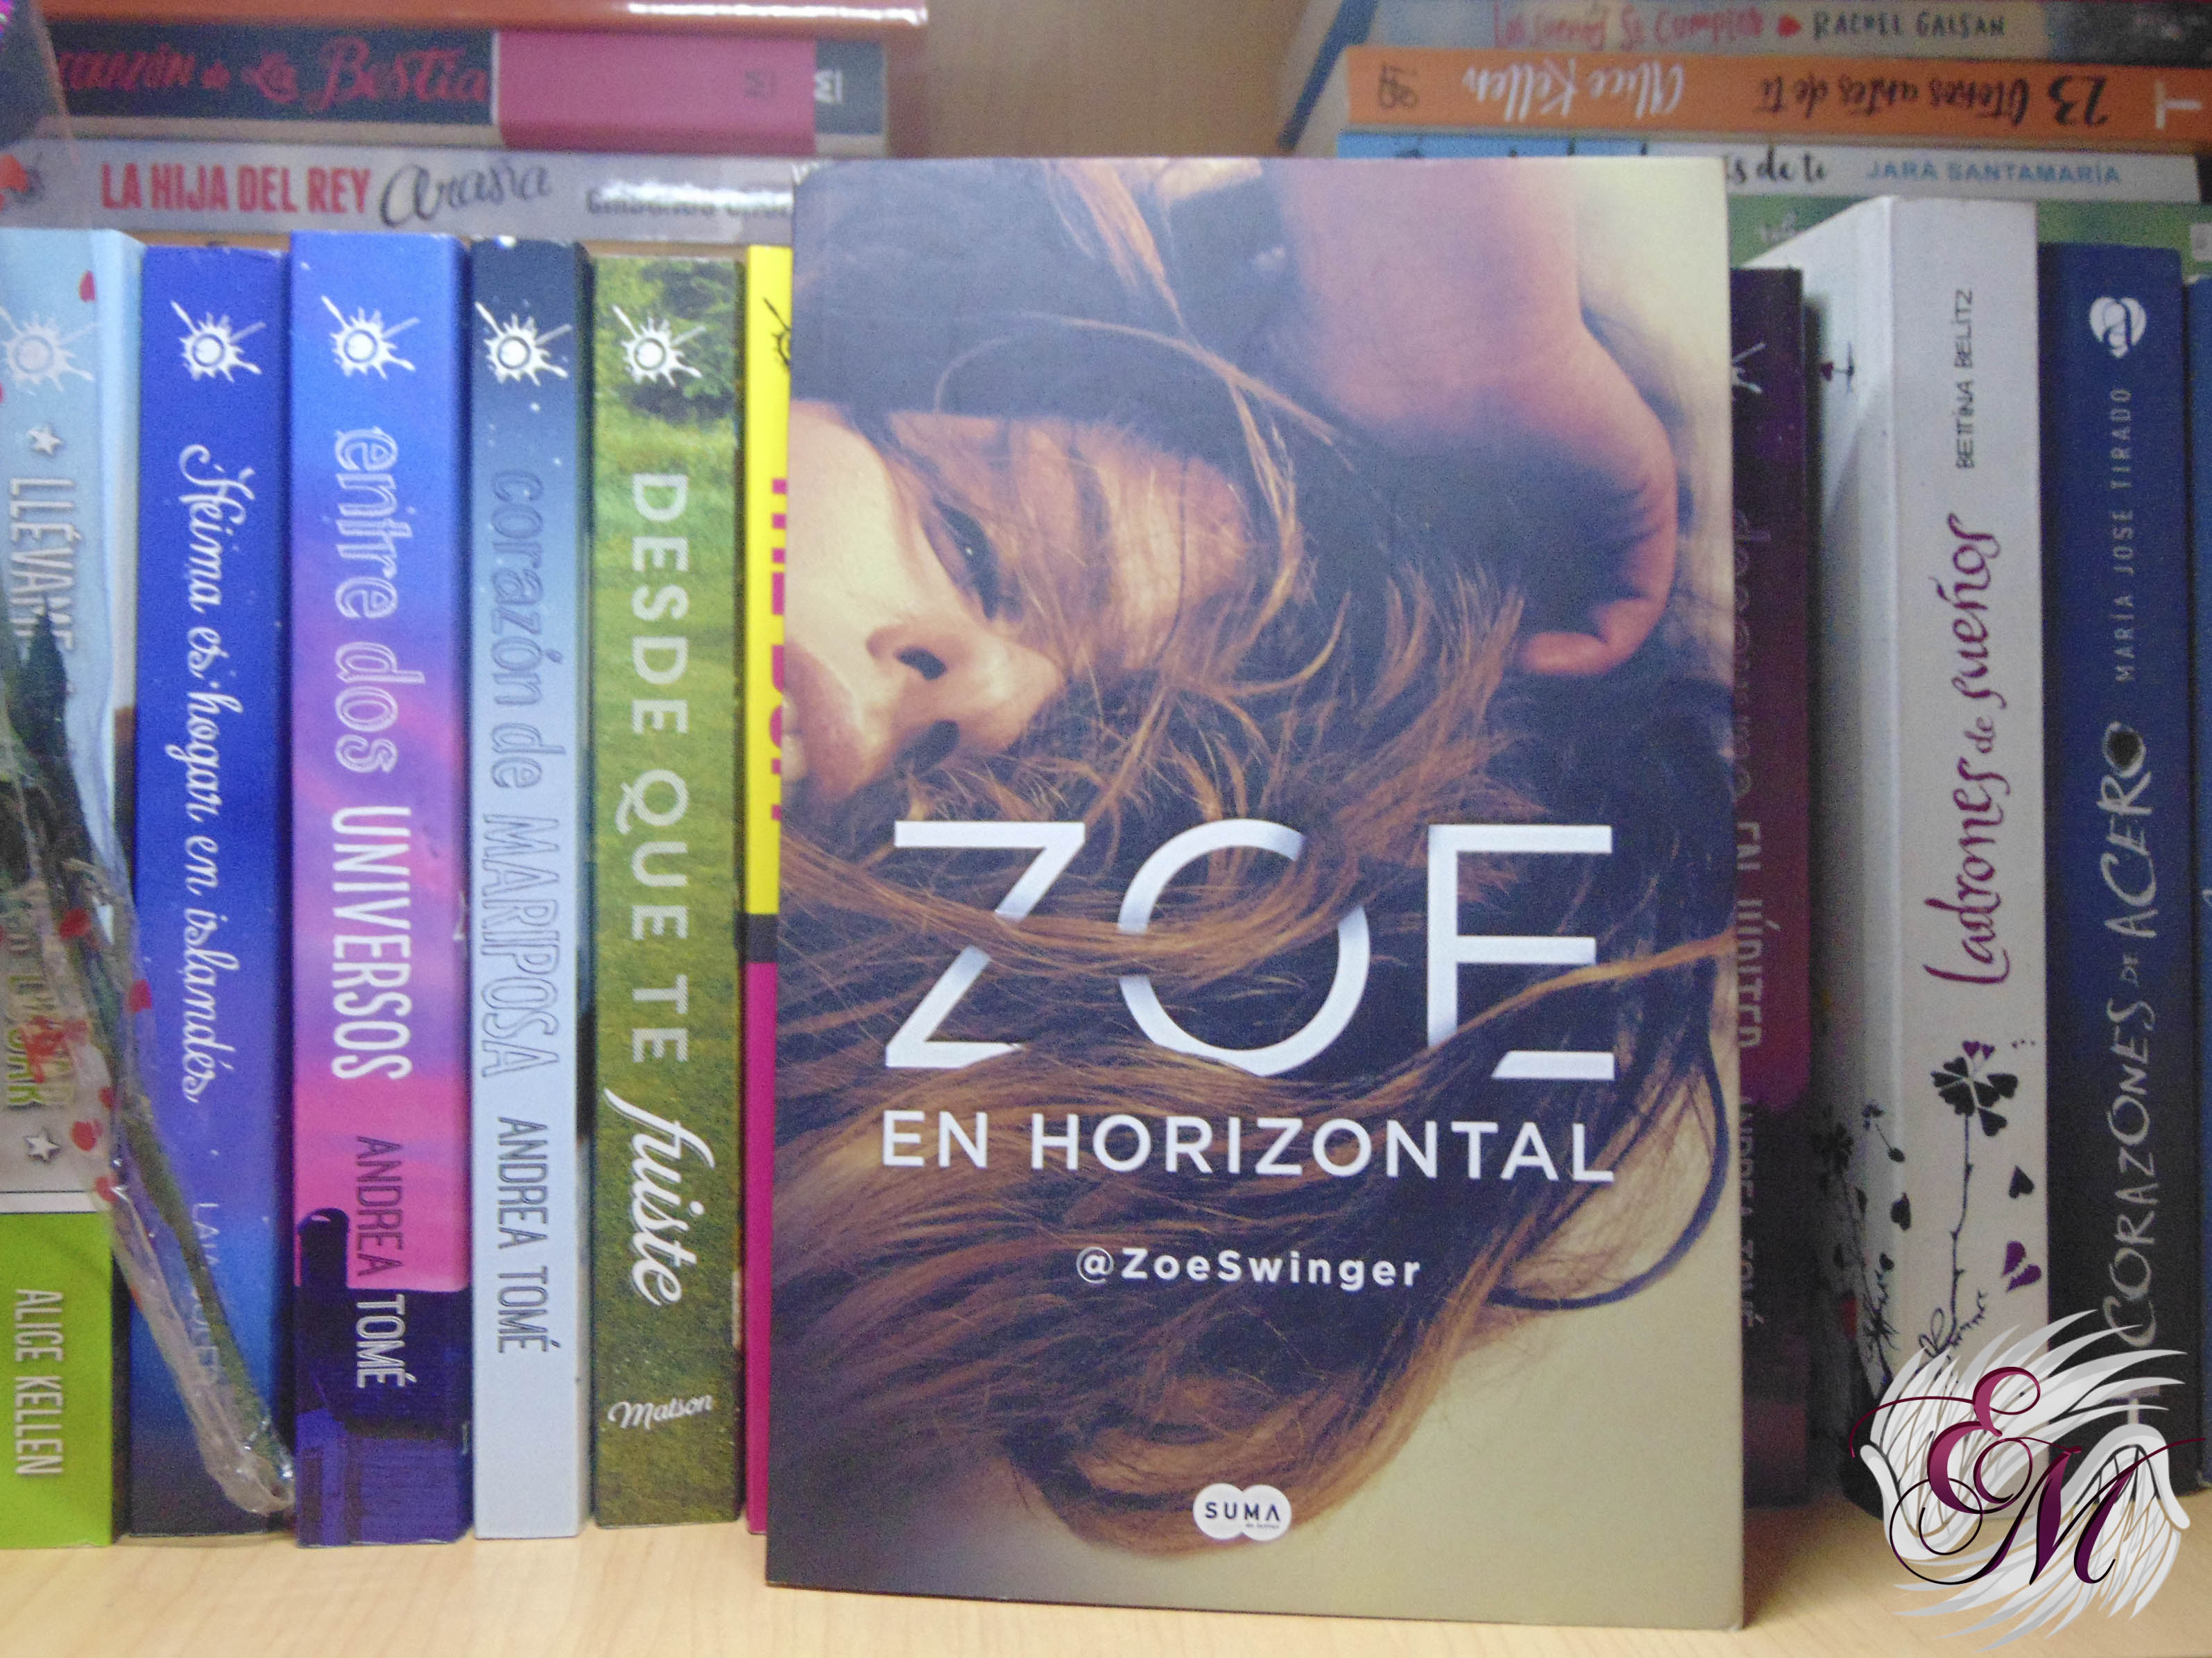 Zoe en horizontal, de ZoeSwinger - Reseña